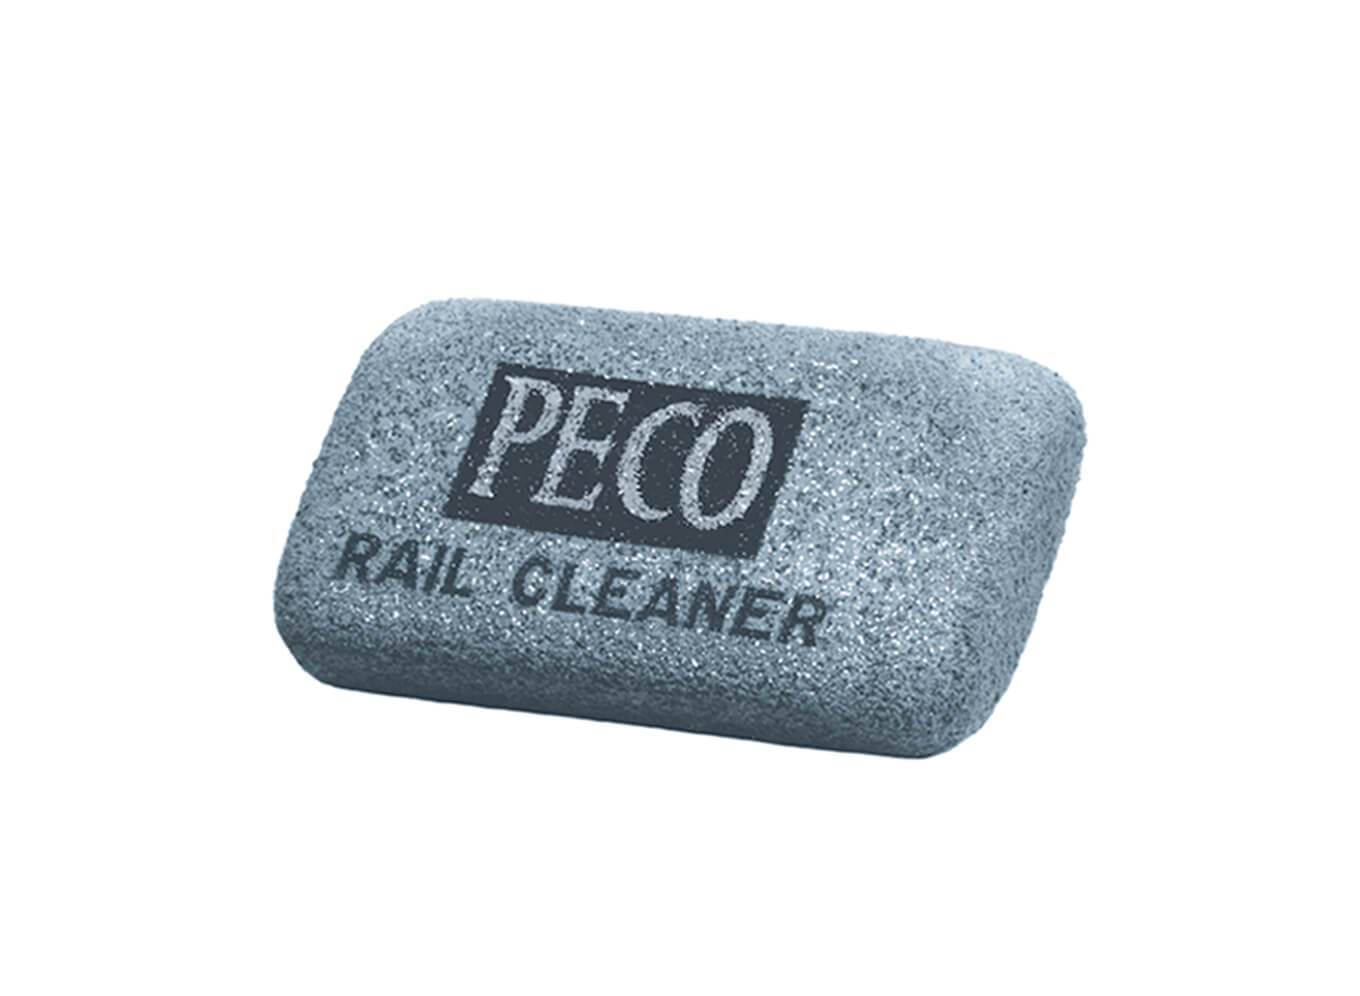 Rail Cleaner, abbrasive rubber block